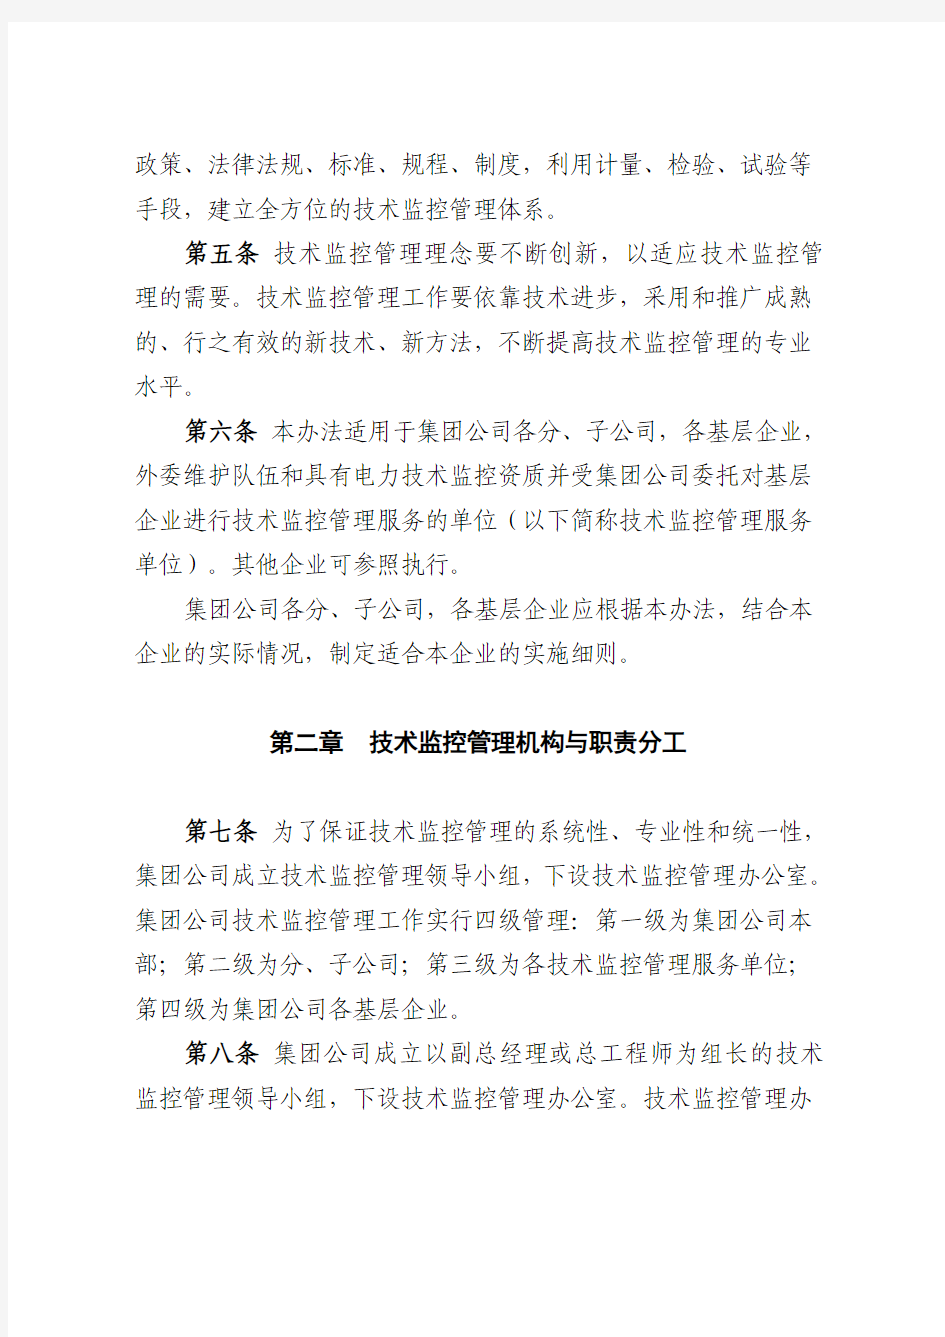 中国大唐集团公司技术监控办法(2007版主要部分)